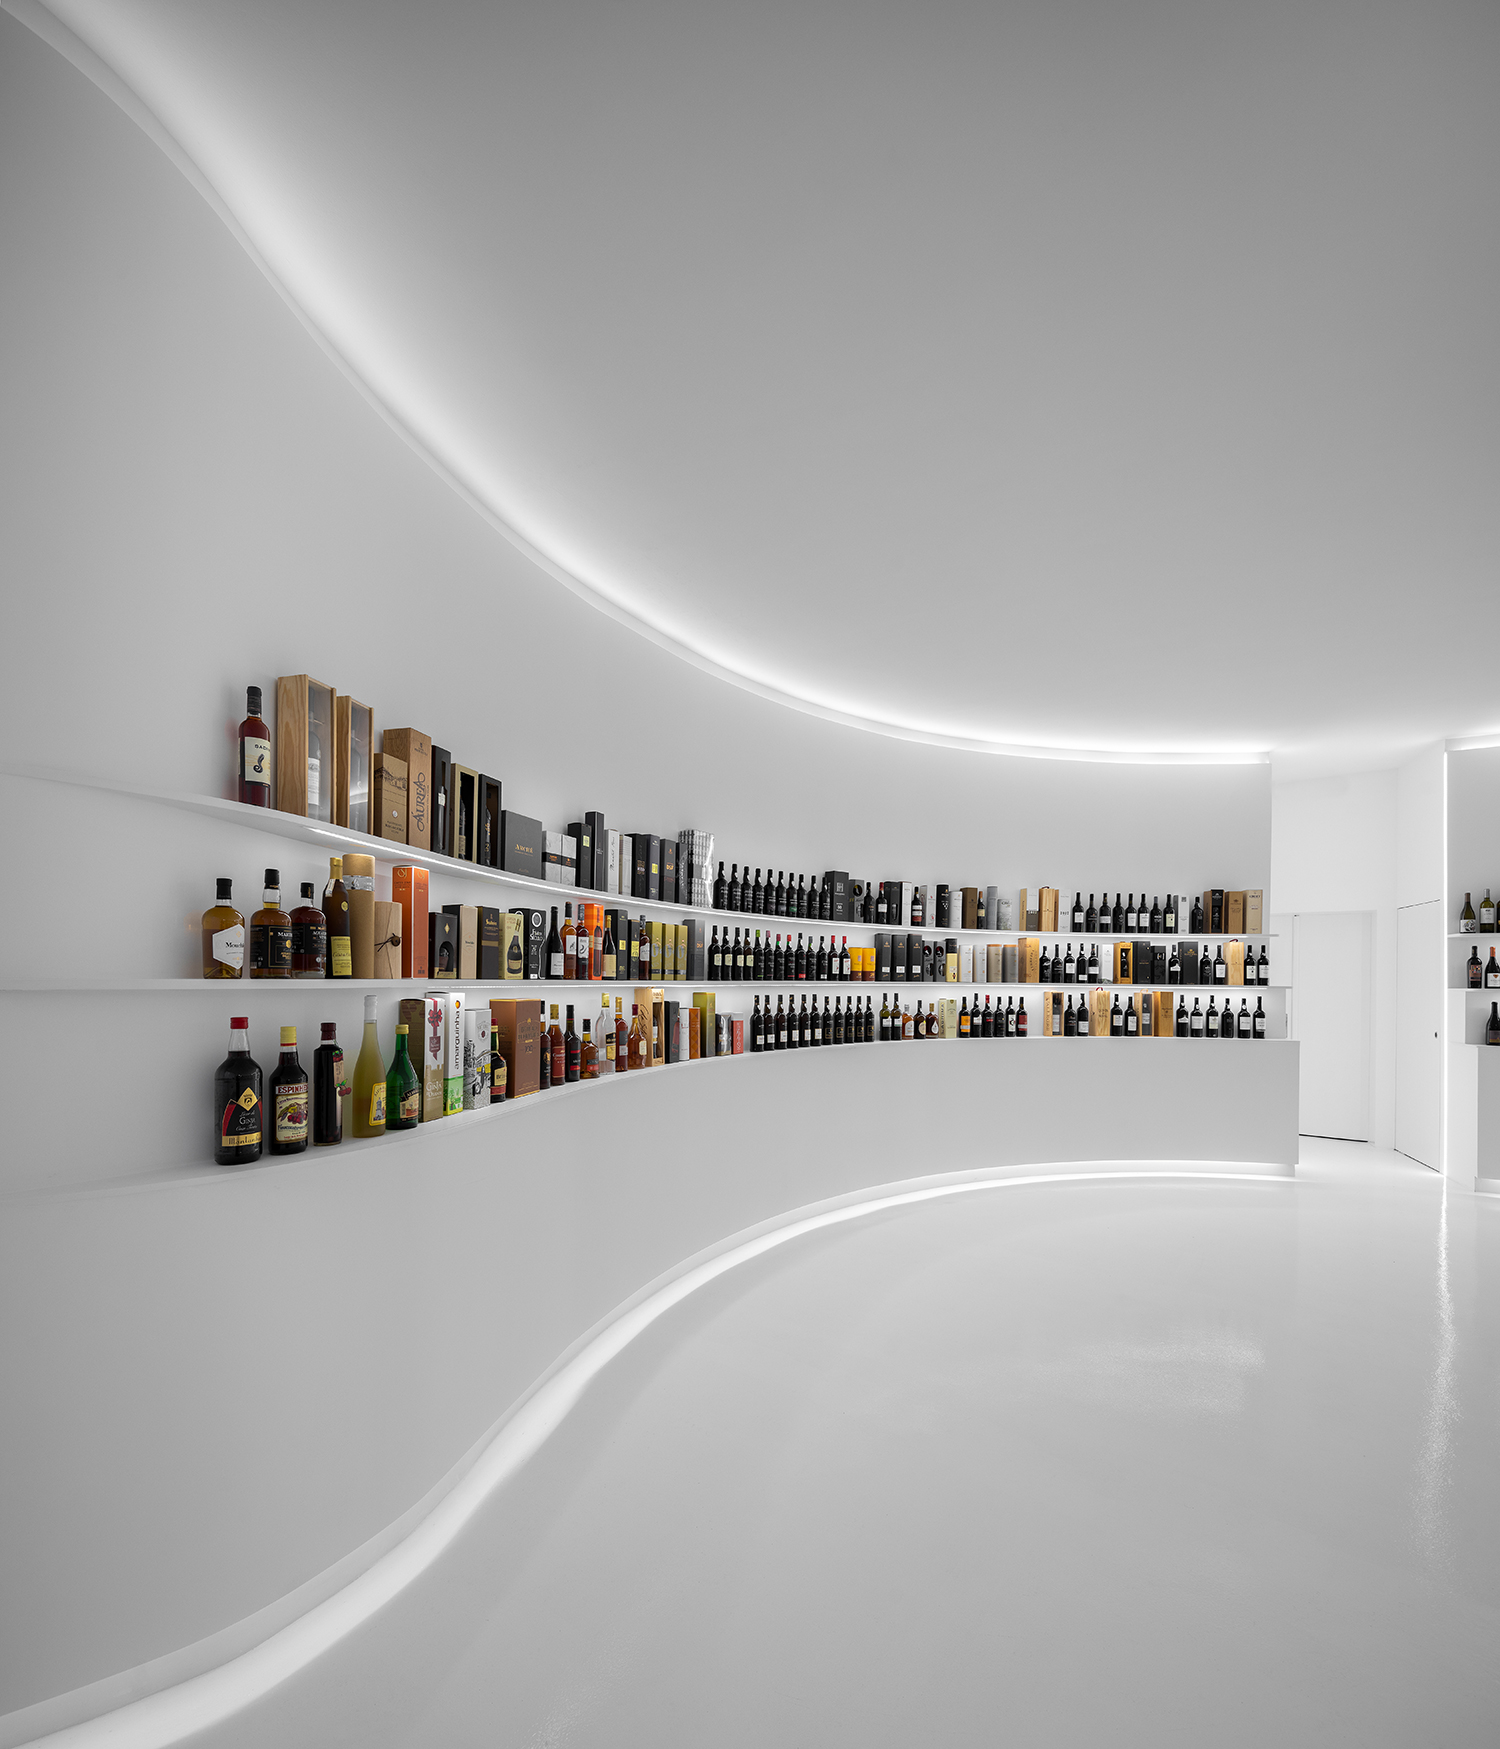 Portugal Vineyards Concept Store, Porto, Portugal / Porto Architects